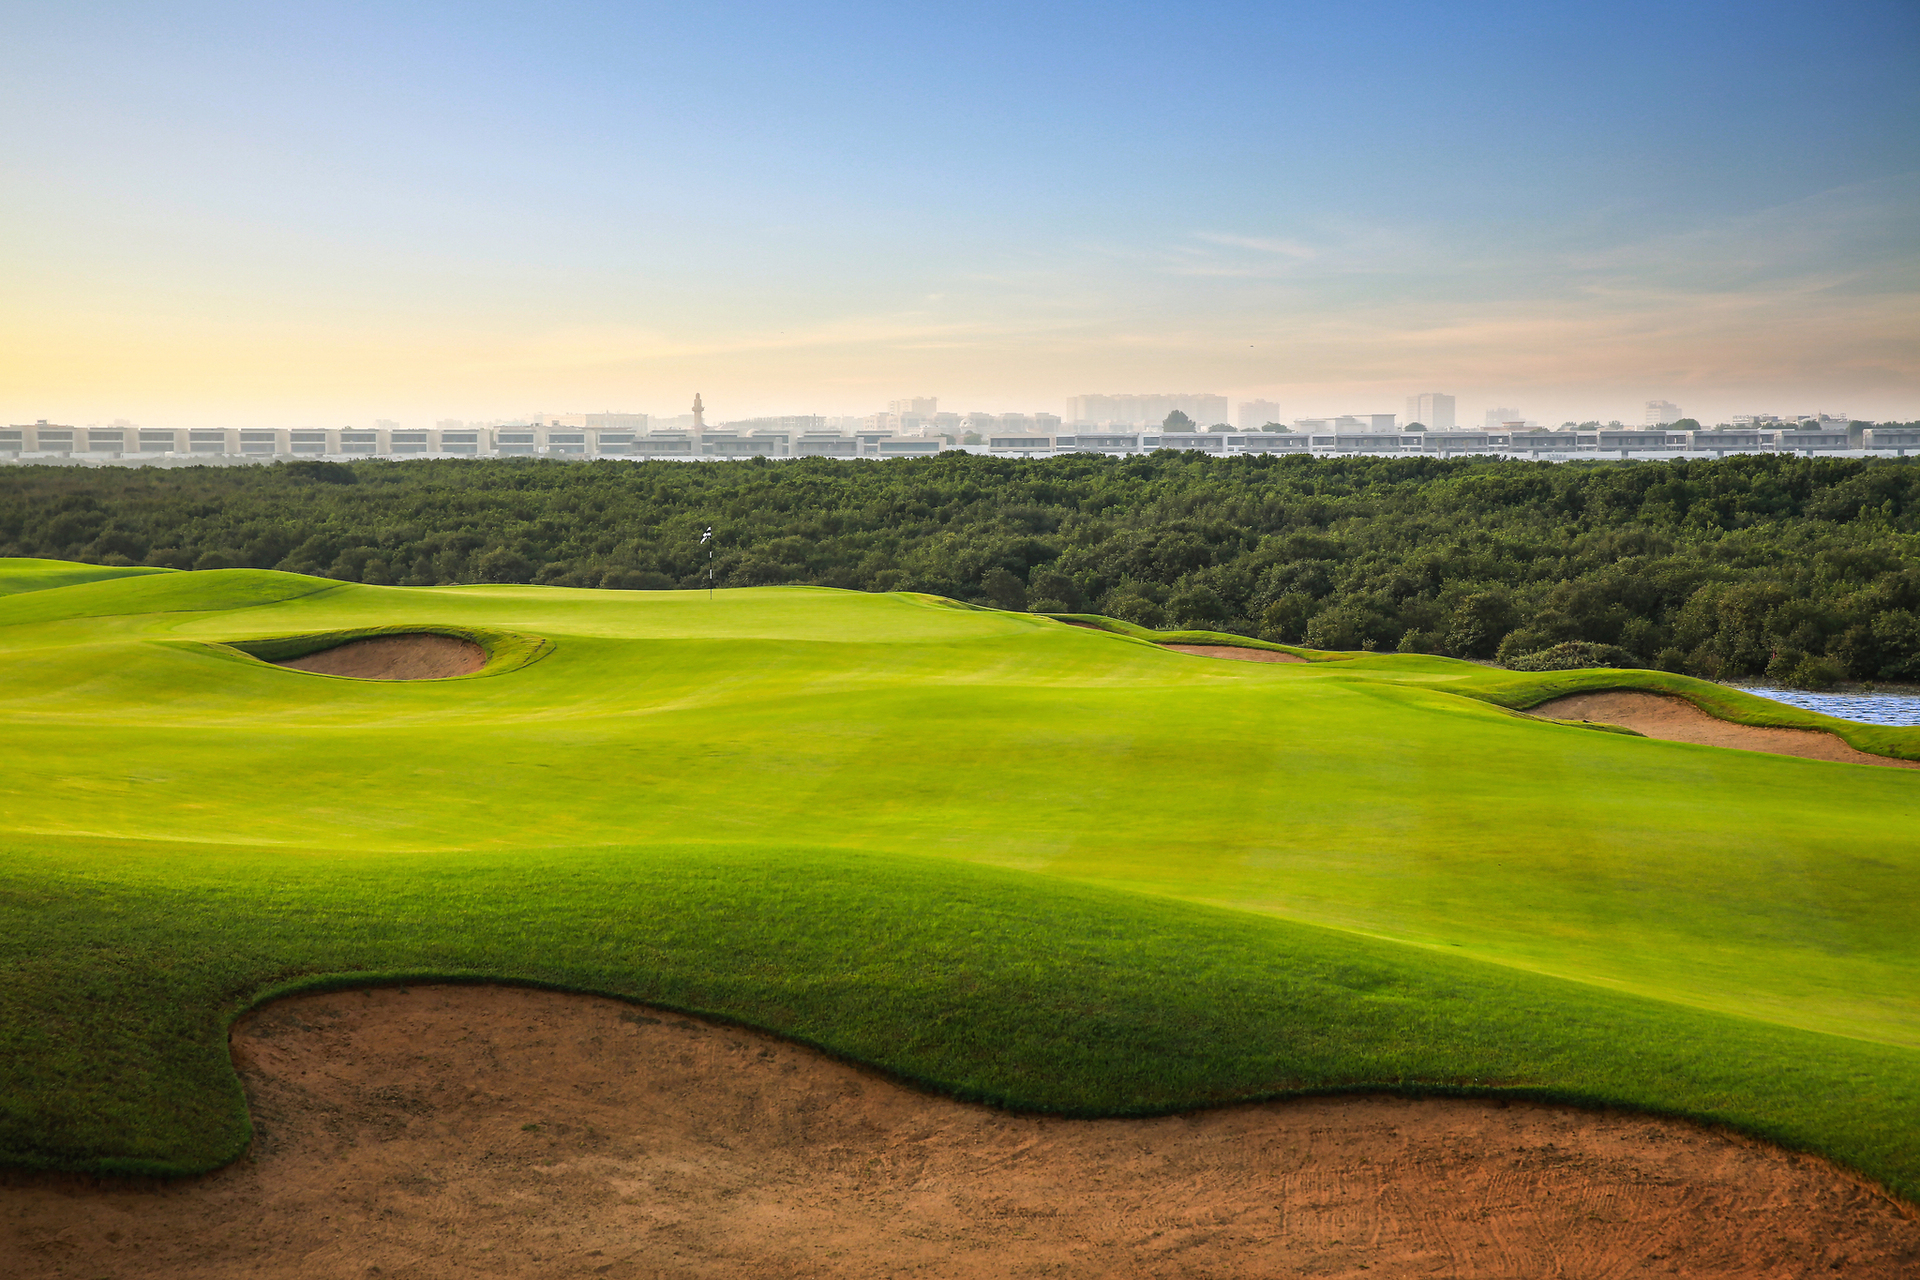 Ви отримаєте доступ до Al Zorah Golf Club і резервації мангрових лісів (100 гектарів).  Зелена територія готелю робить його схожим на оазис, захований у надрах пустелі.